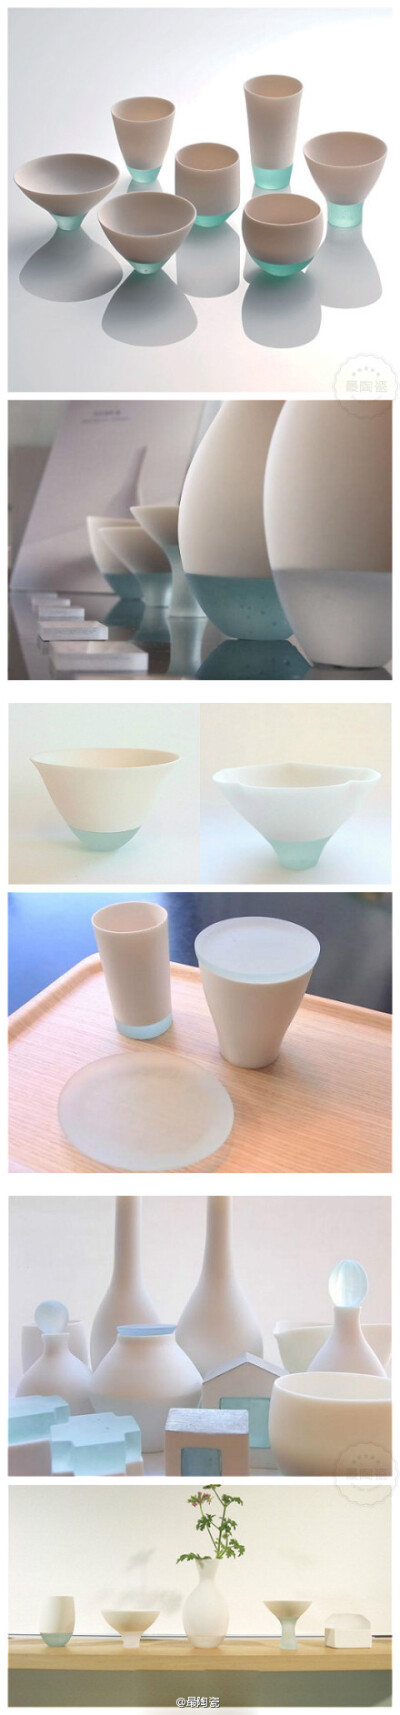 【亮面瓷器&amp;amp;半透明玻璃】田中美佐陶瓷工艺品设计。该系列作品获得日本著名的Takaoka工艺设计比赛2009年的第二名。食器 工業設計 產品設計 設計 中國風